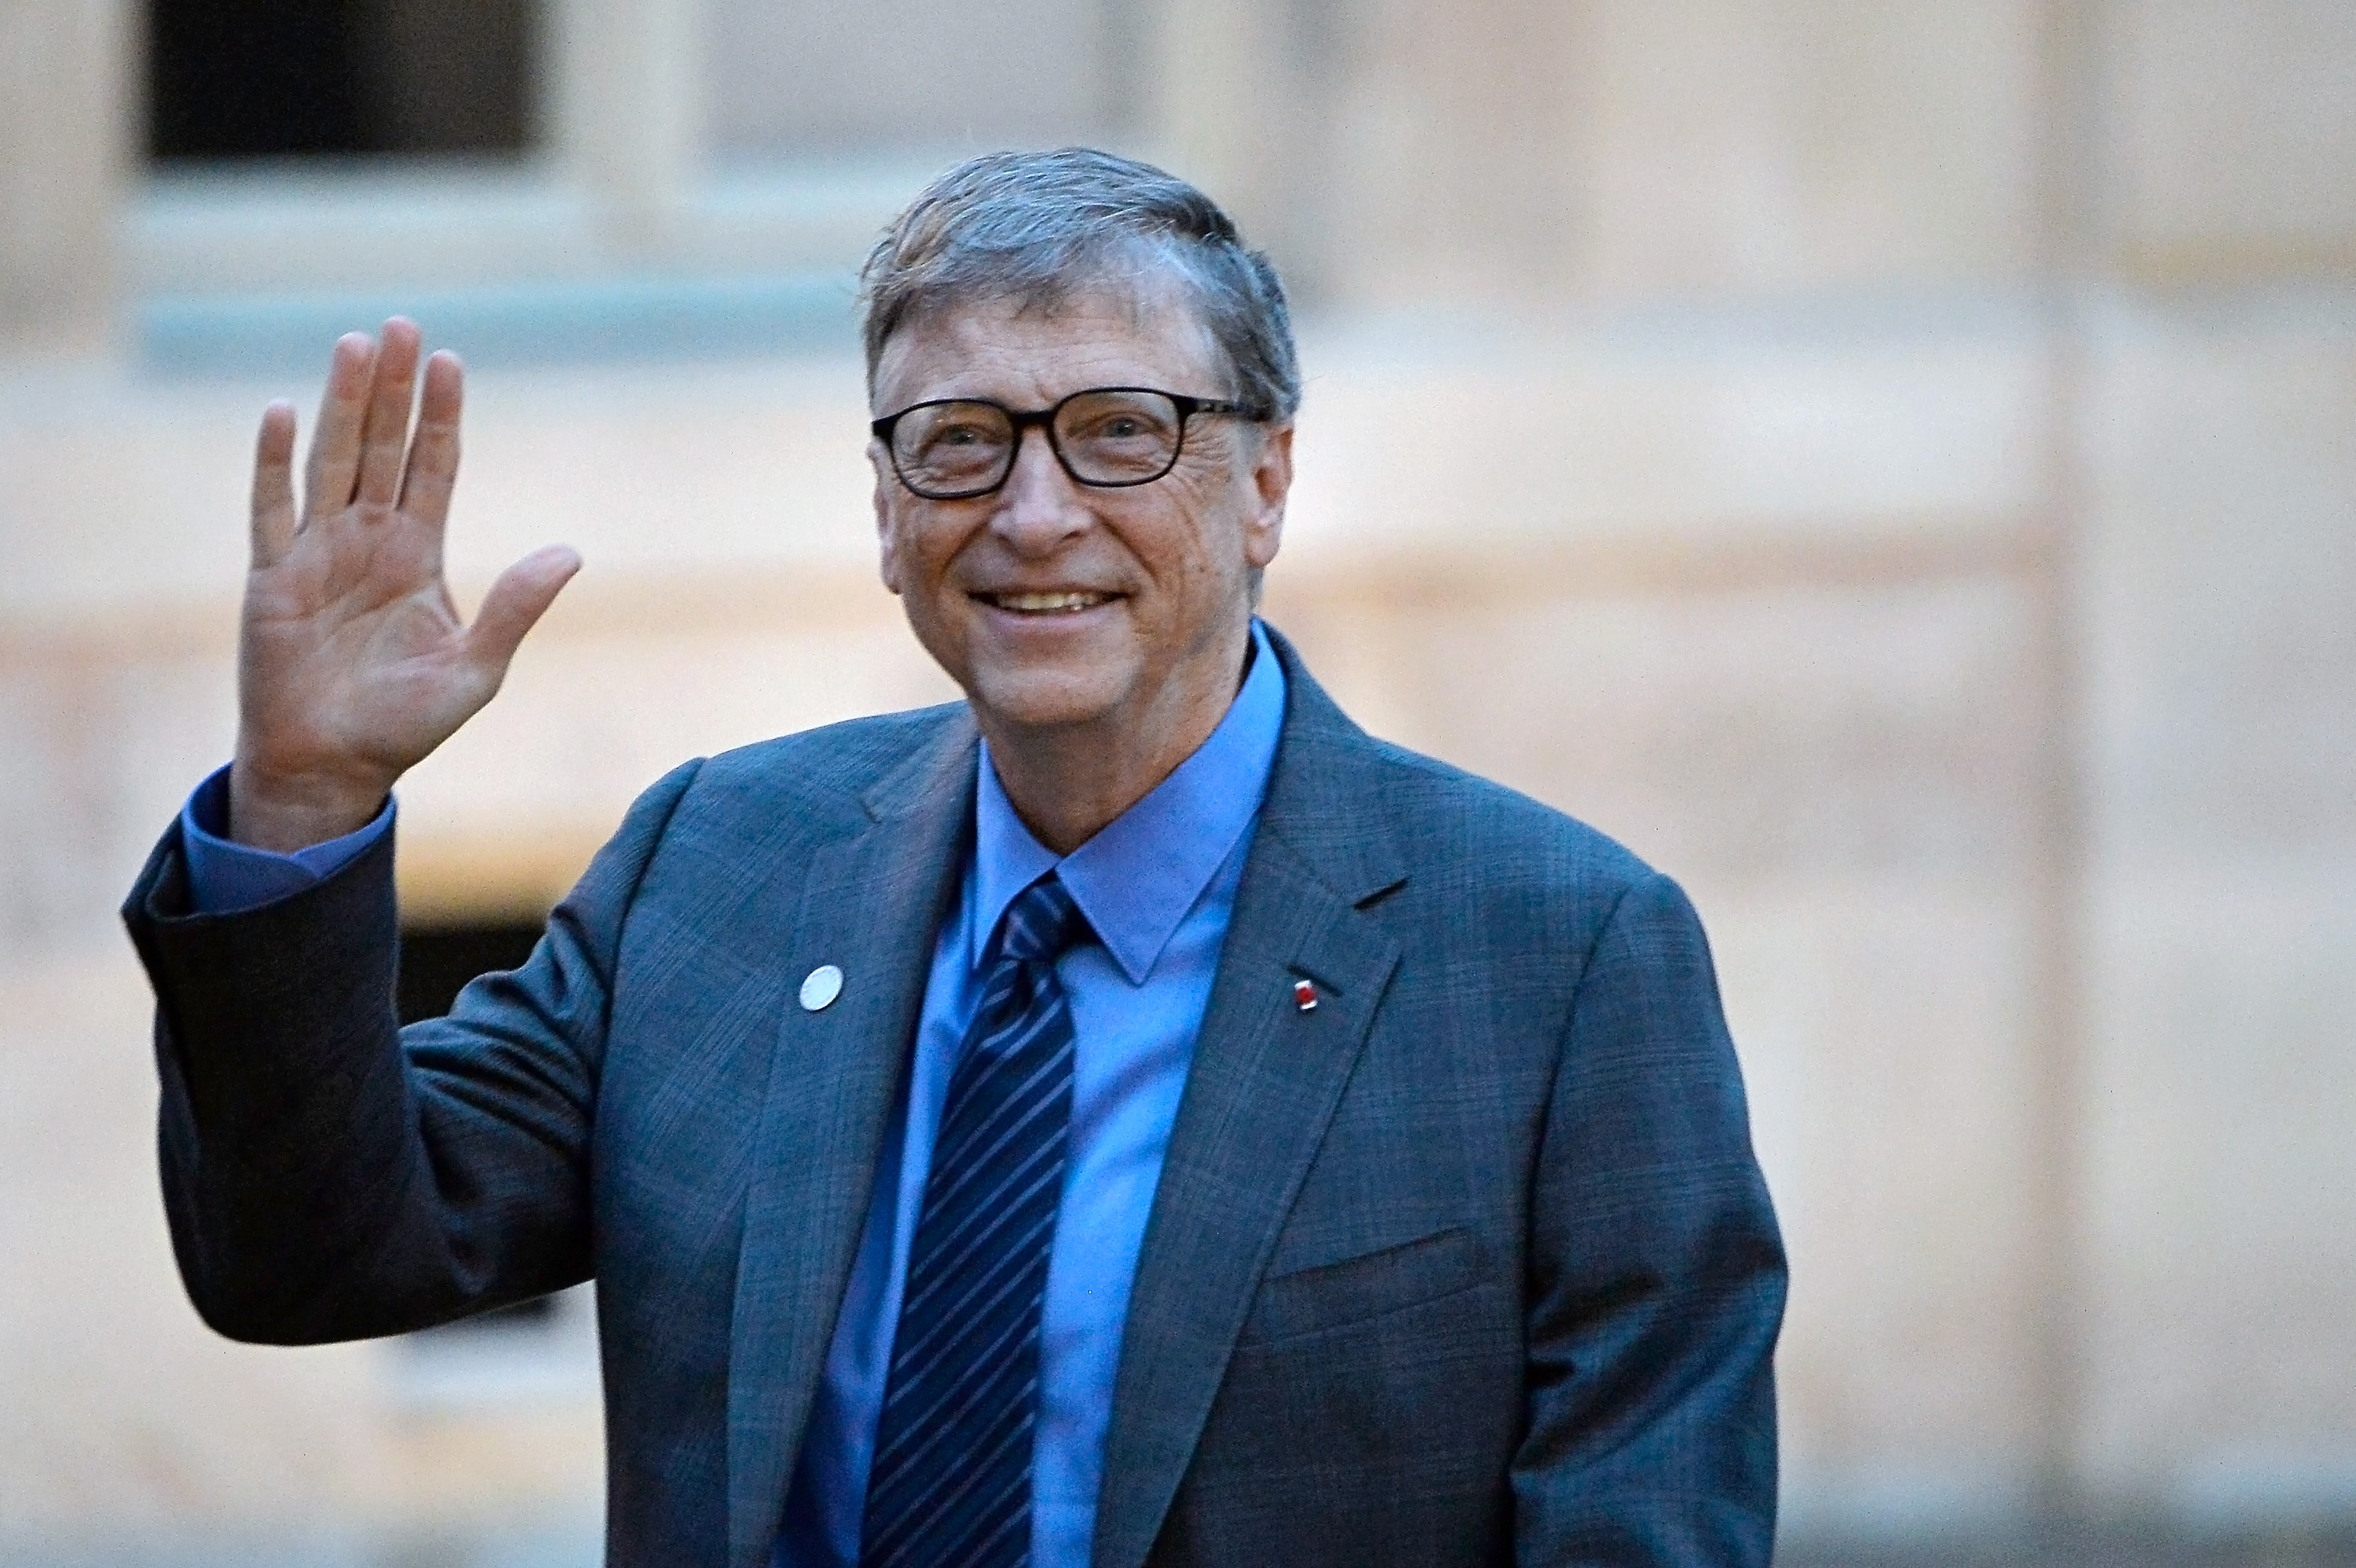 Bill Gates sẽ tranh cử tổng thống Mỹ?